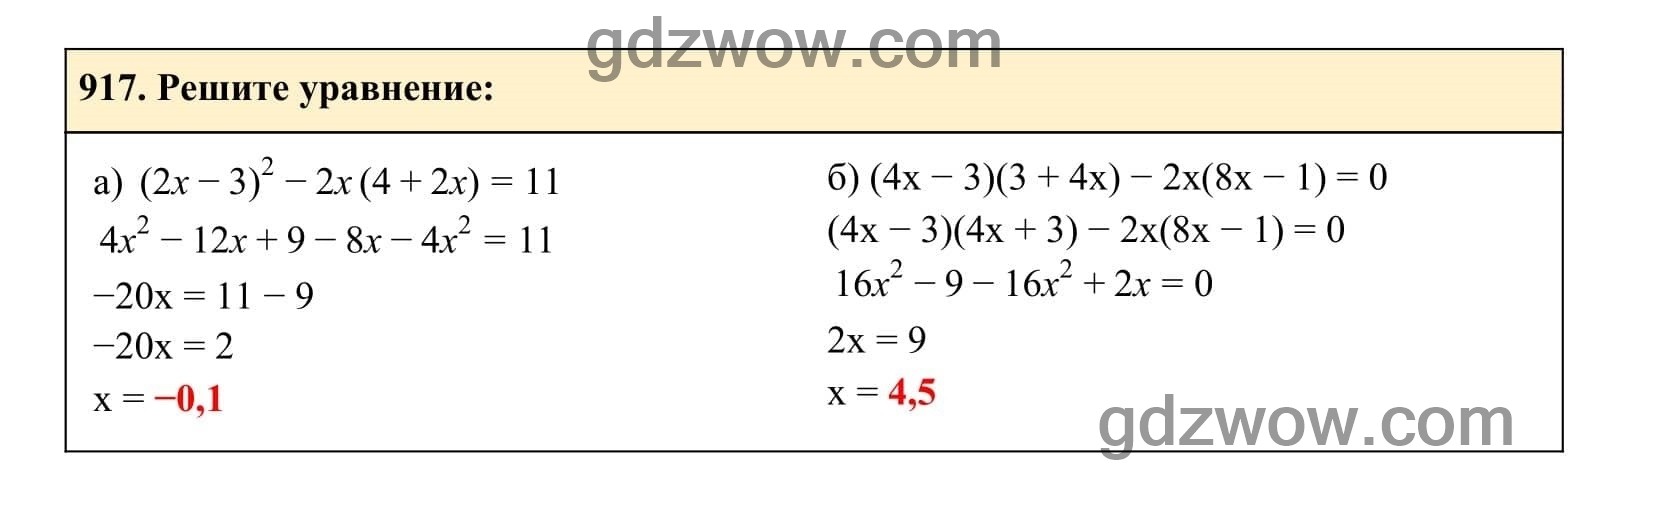 Упражнение 917 - ГДЗ по Алгебре 7 класс Учебник Макарычев (решебник) - GDZwow